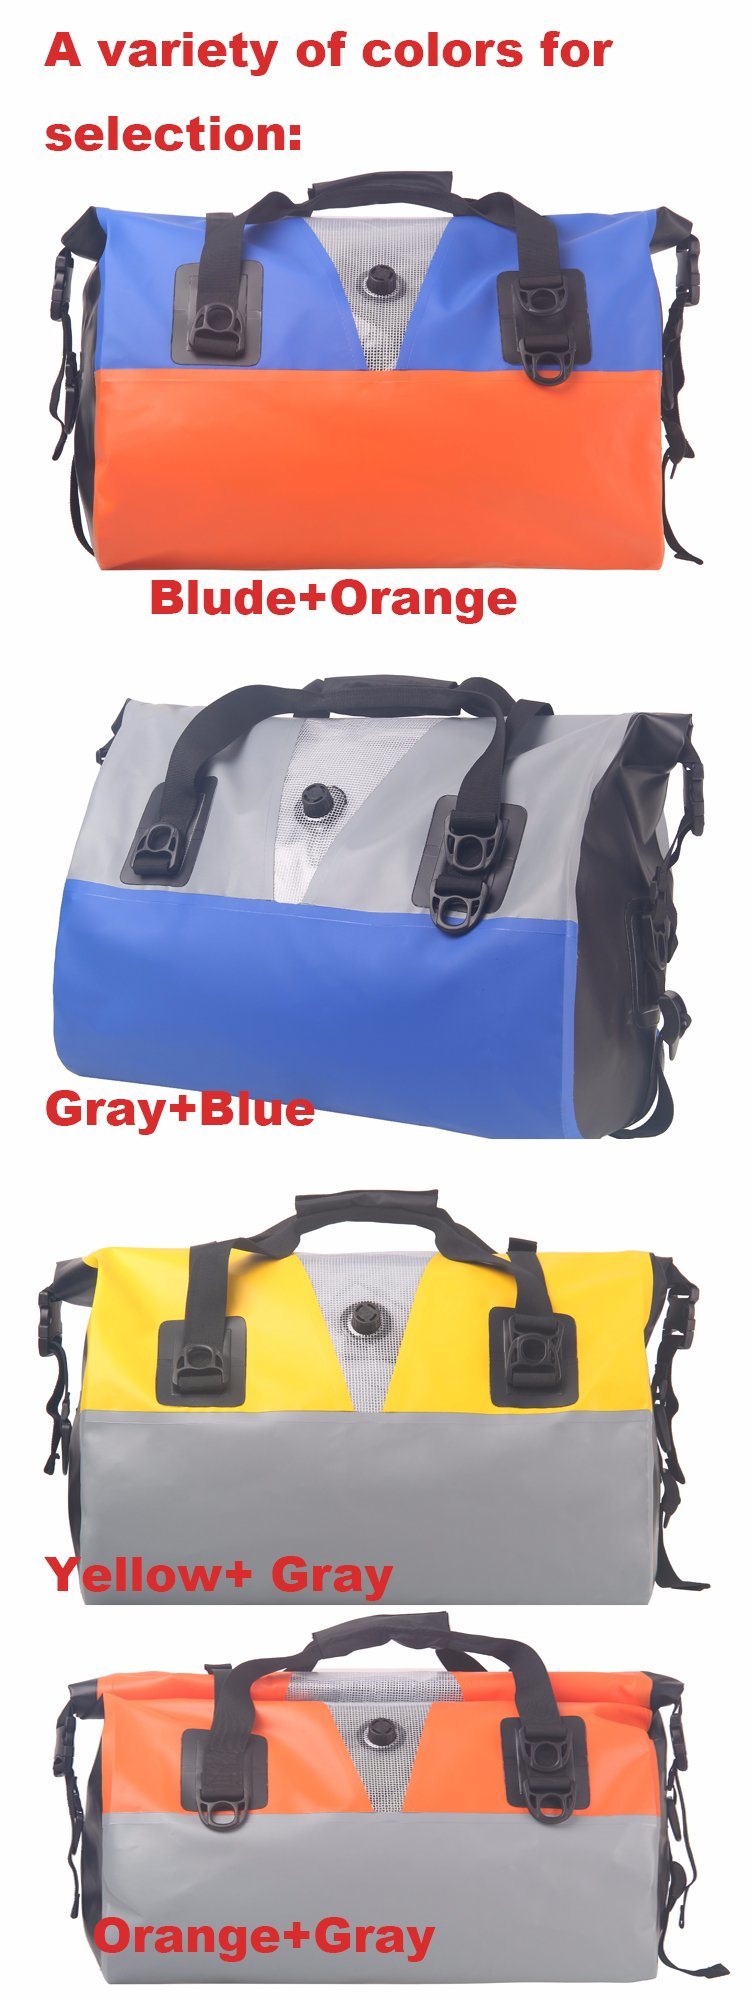 PVC Waterproof Duffel Bag Handle Bag Travel Bag with Welded Seams